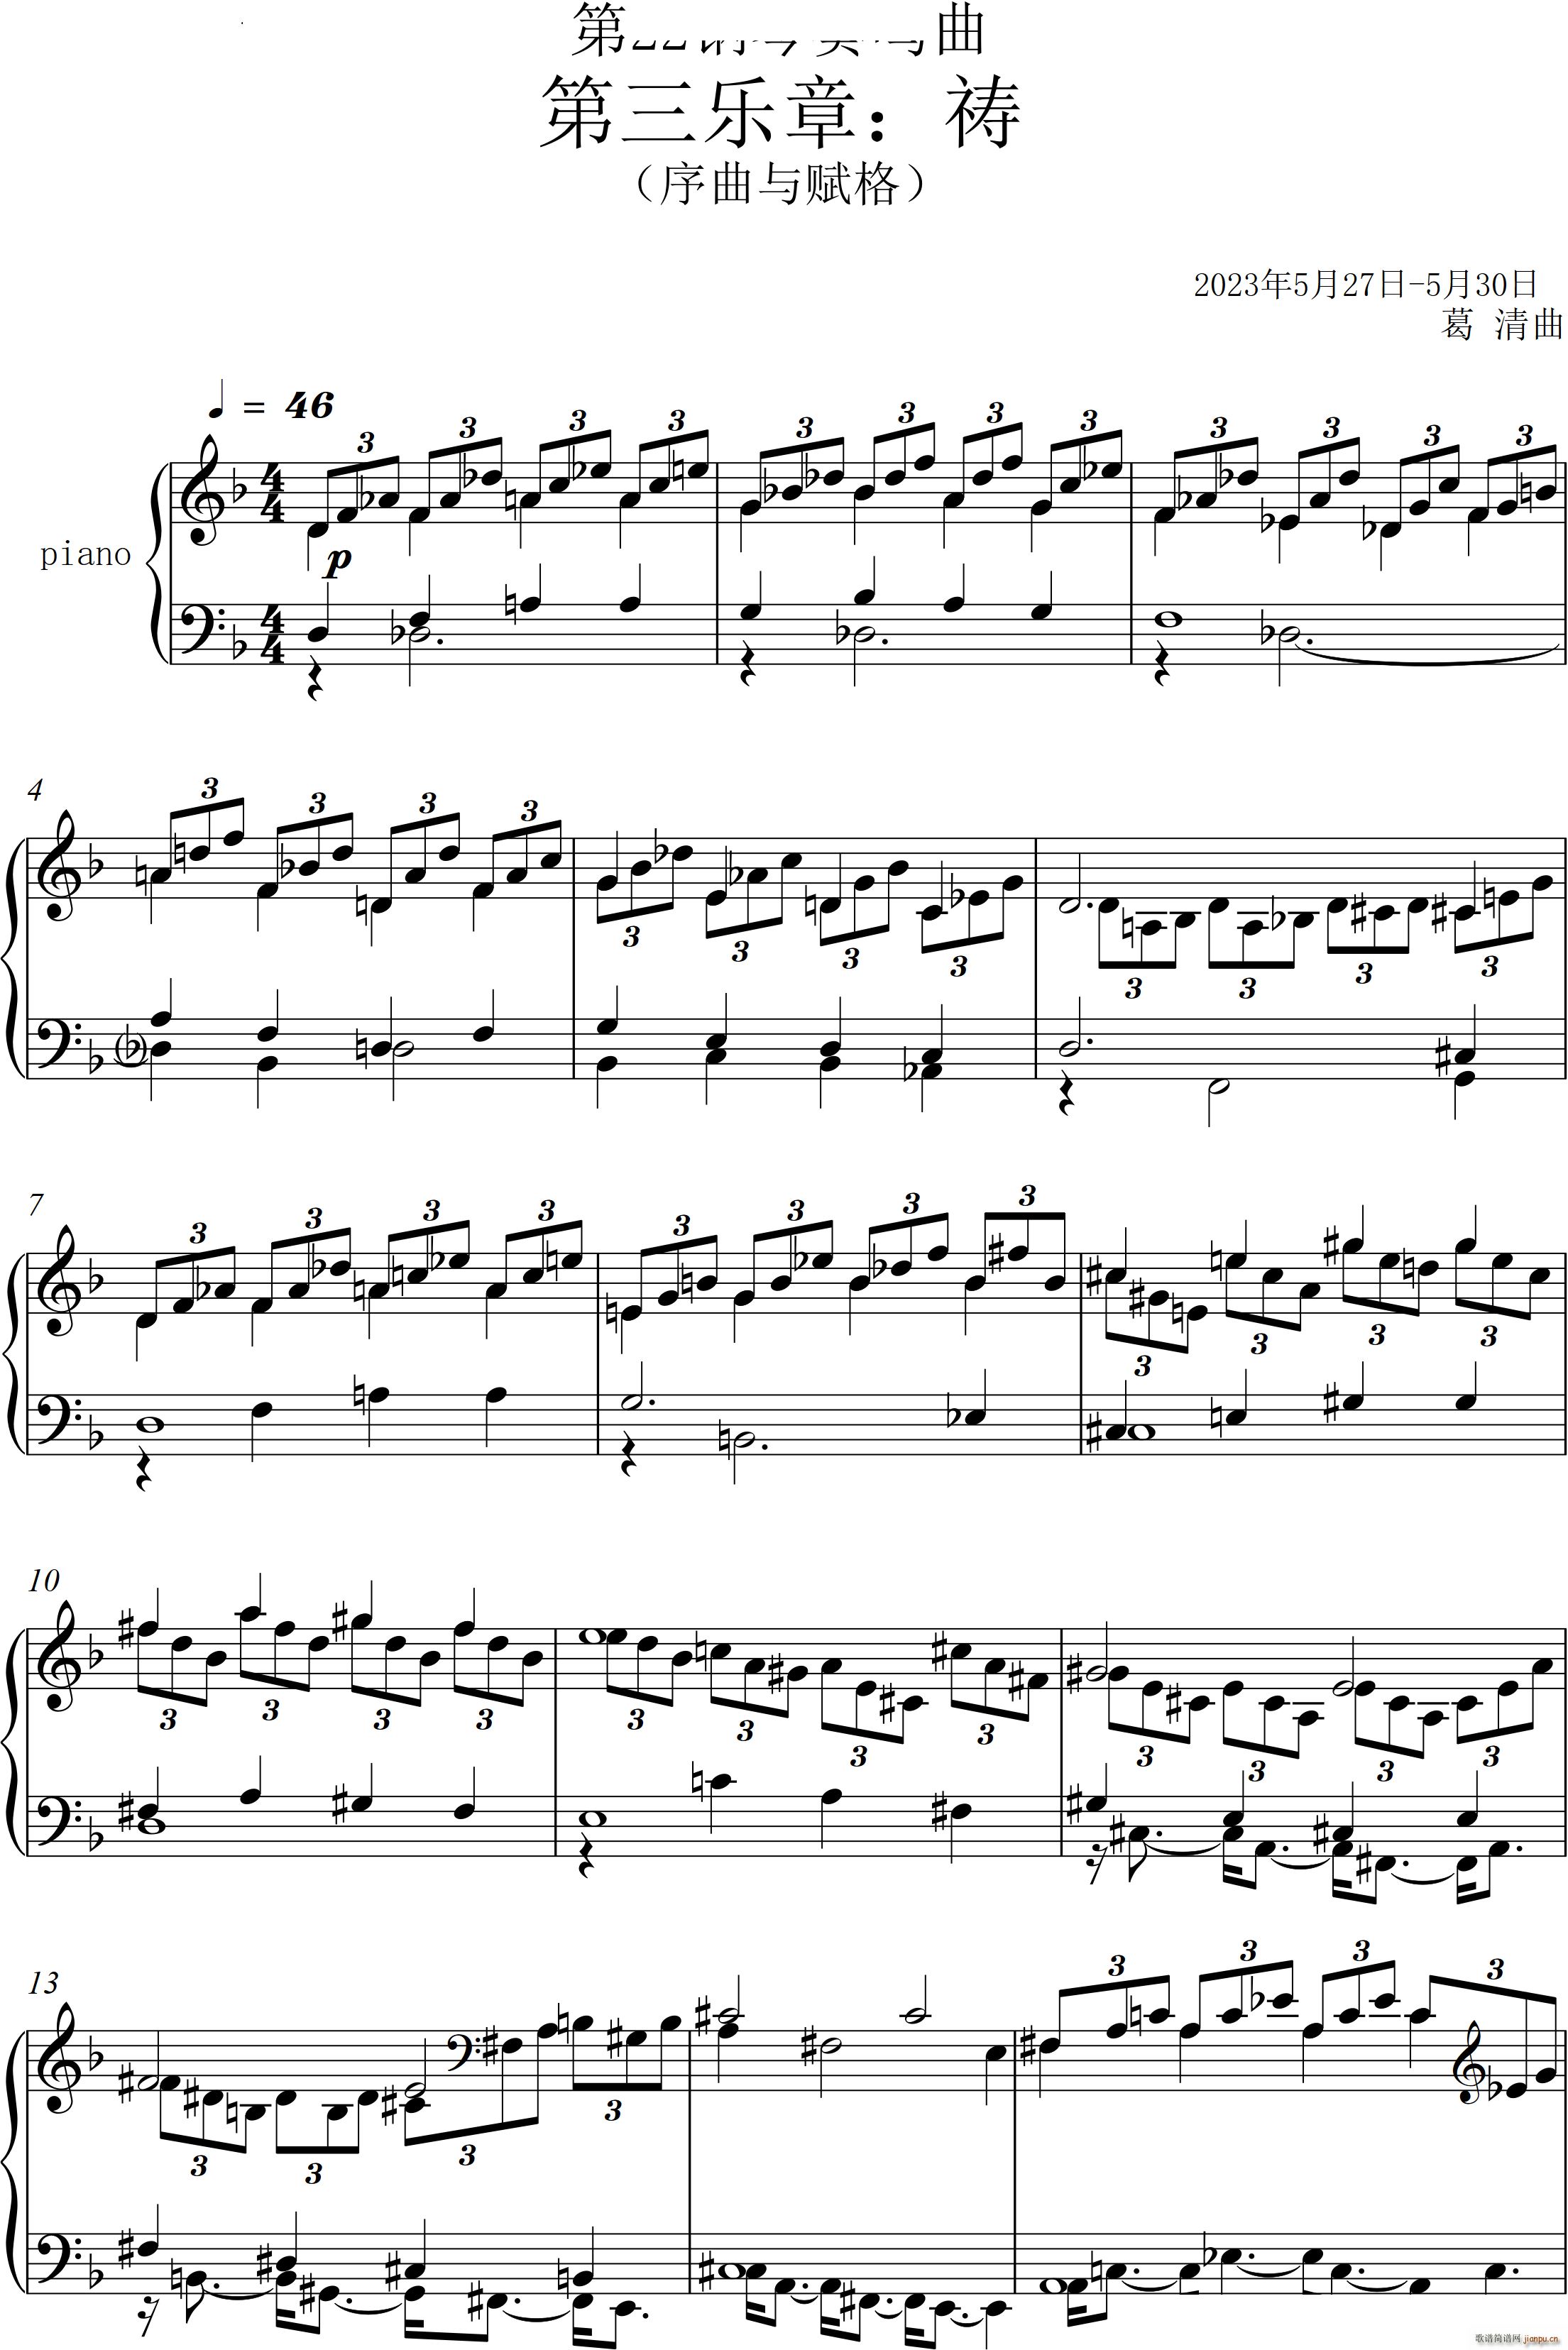 第22钢琴奏鸣曲 信仰 Piano Sonata No`22四个乐章(钢琴谱)23